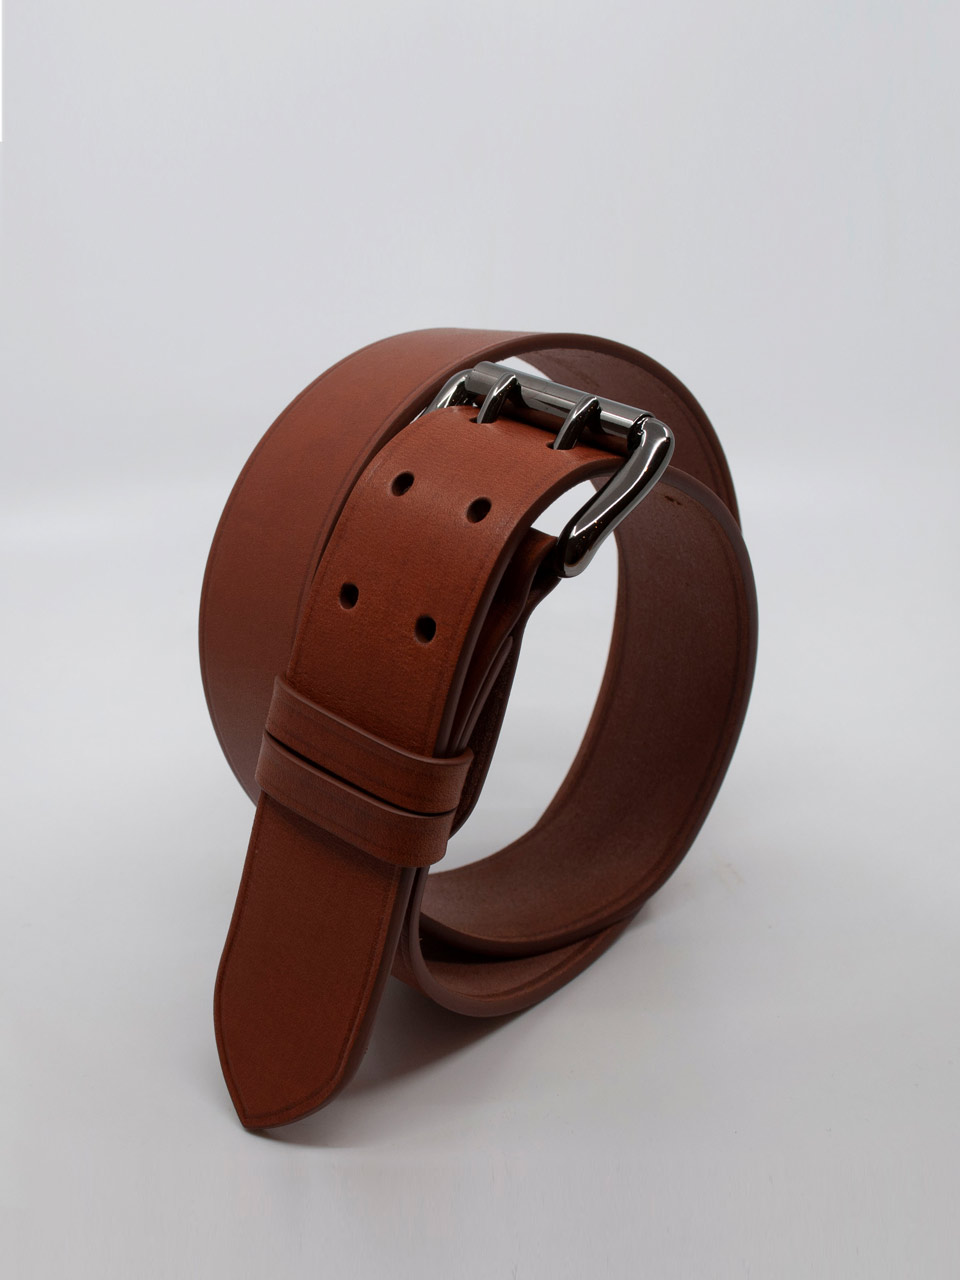 Chutes de cuir, la renaissance - Leather Fashion Design (LFD)